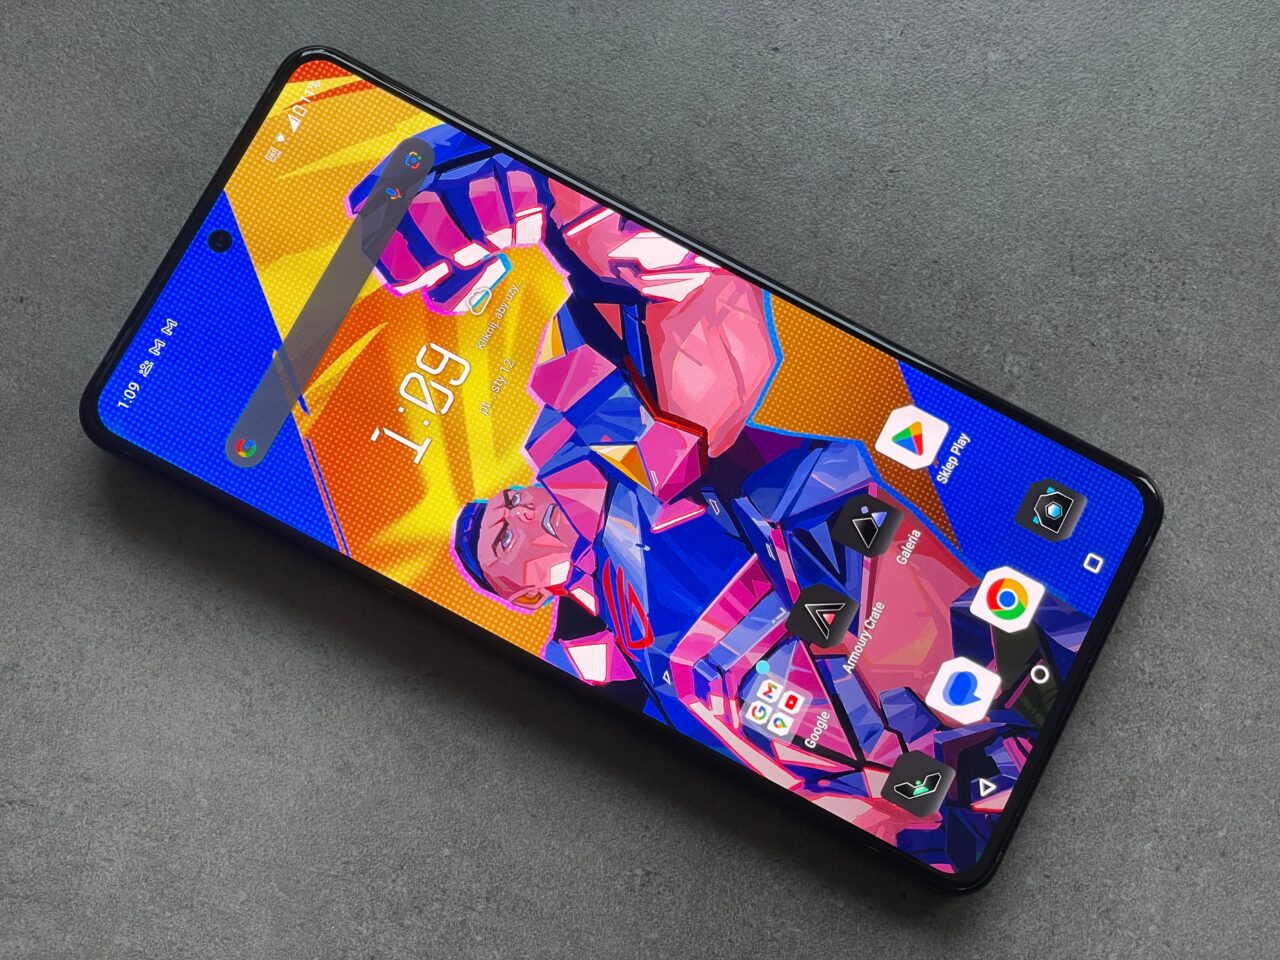 Smartfon leżący na szarym tle z kolorową tapetą przedstawiającą postać komiksową na ekranie głównym.